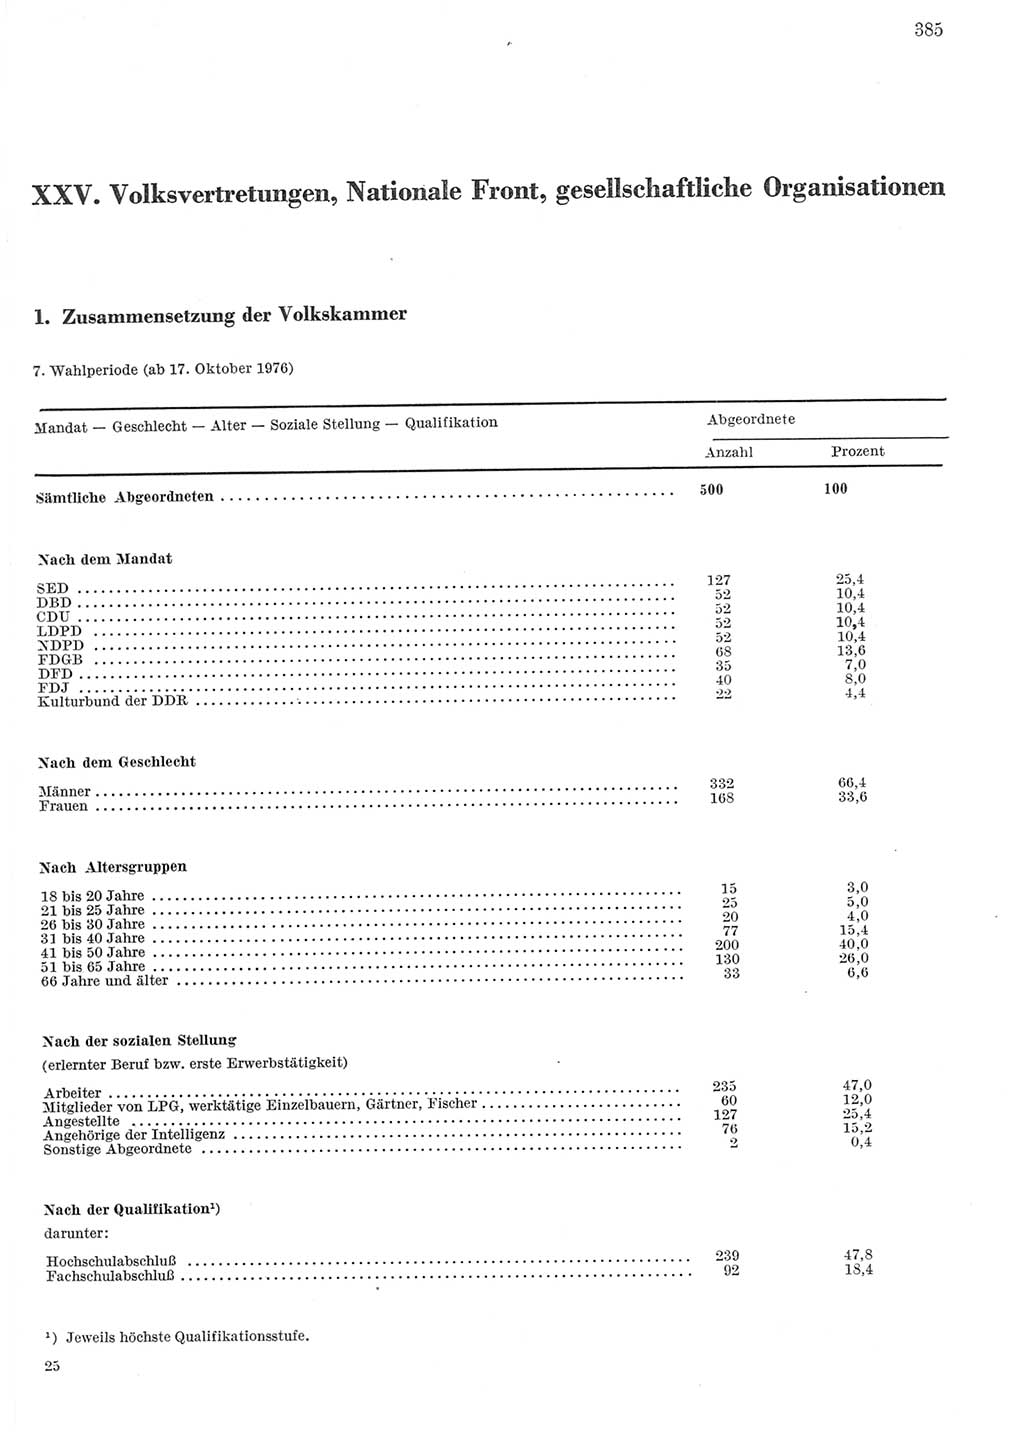 Statistisches Jahrbuch der Deutschen Demokratischen Republik (DDR) 1979, Seite 385 (Stat. Jb. DDR 1979, S. 385)